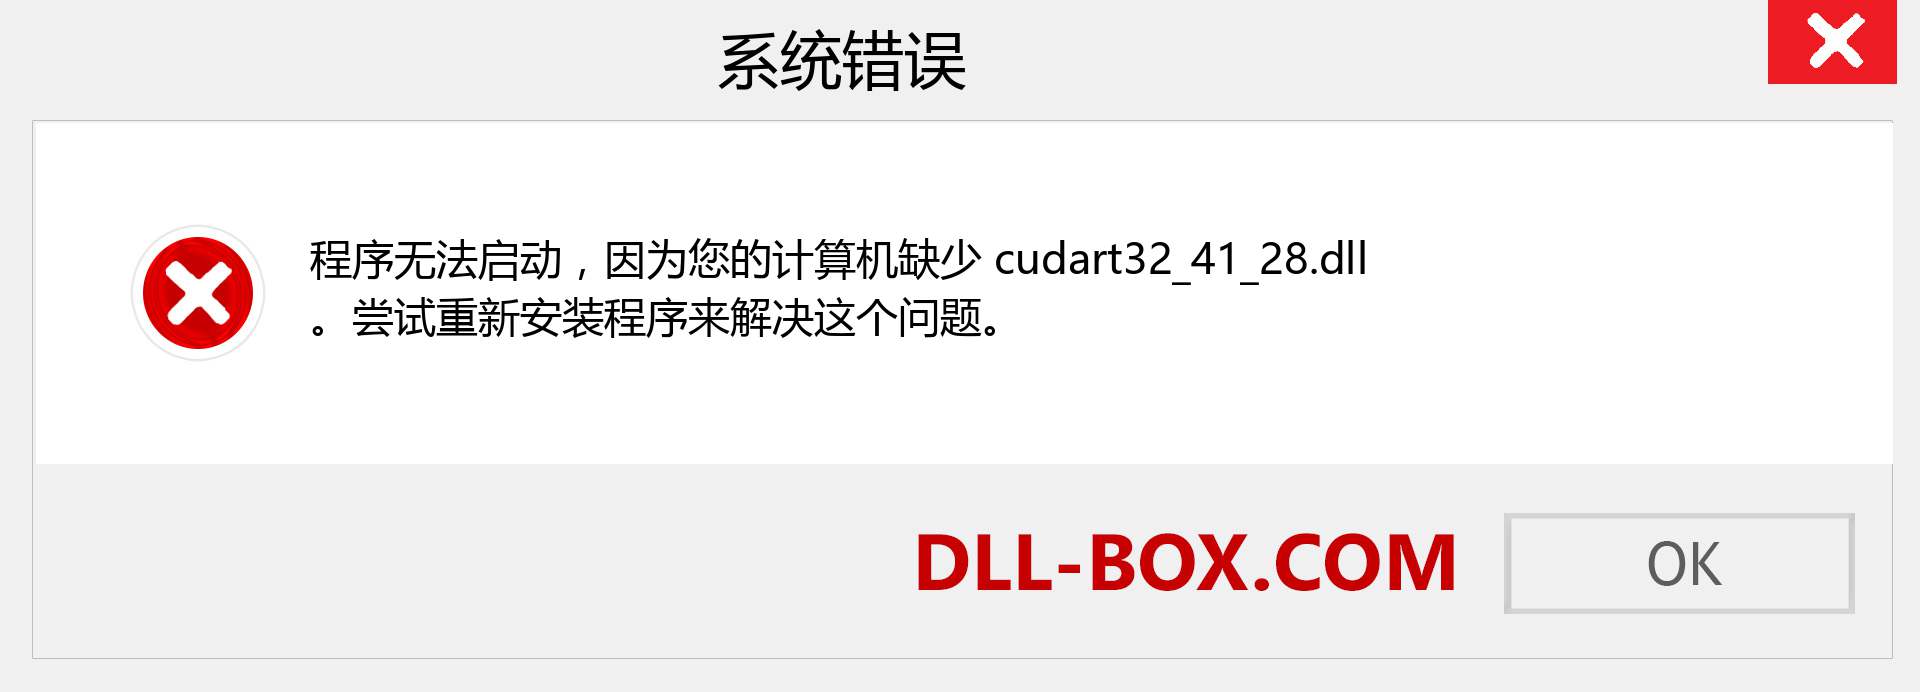 cudart32_41_28.dll 文件丢失？。 适用于 Windows 7、8、10 的下载 - 修复 Windows、照片、图像上的 cudart32_41_28 dll 丢失错误